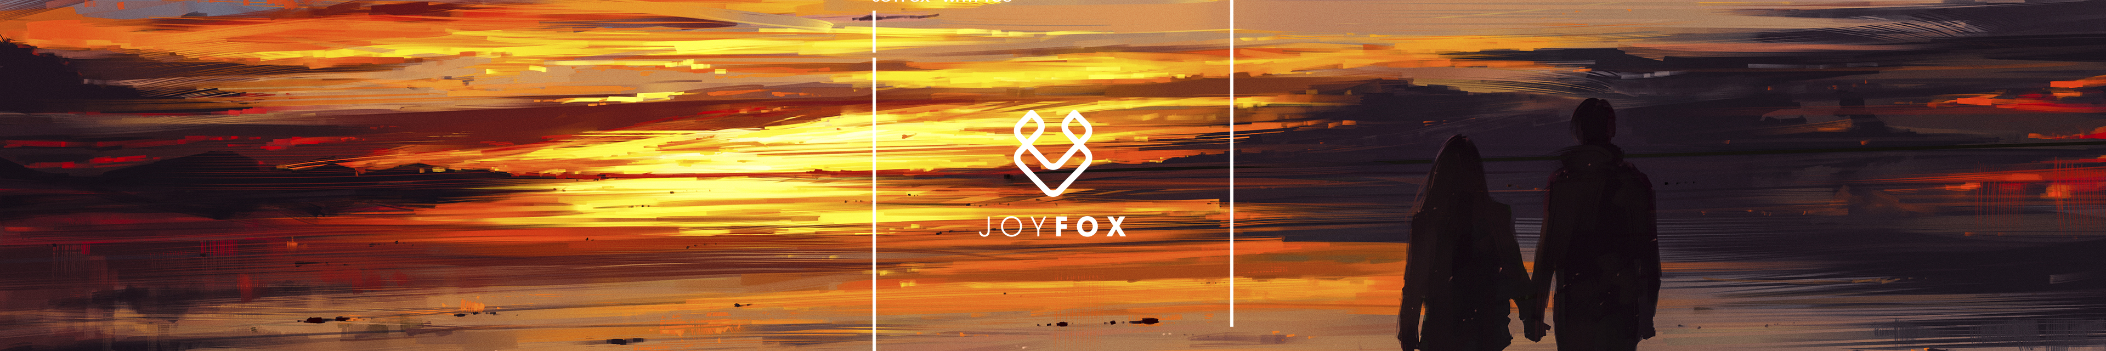 JoyFox